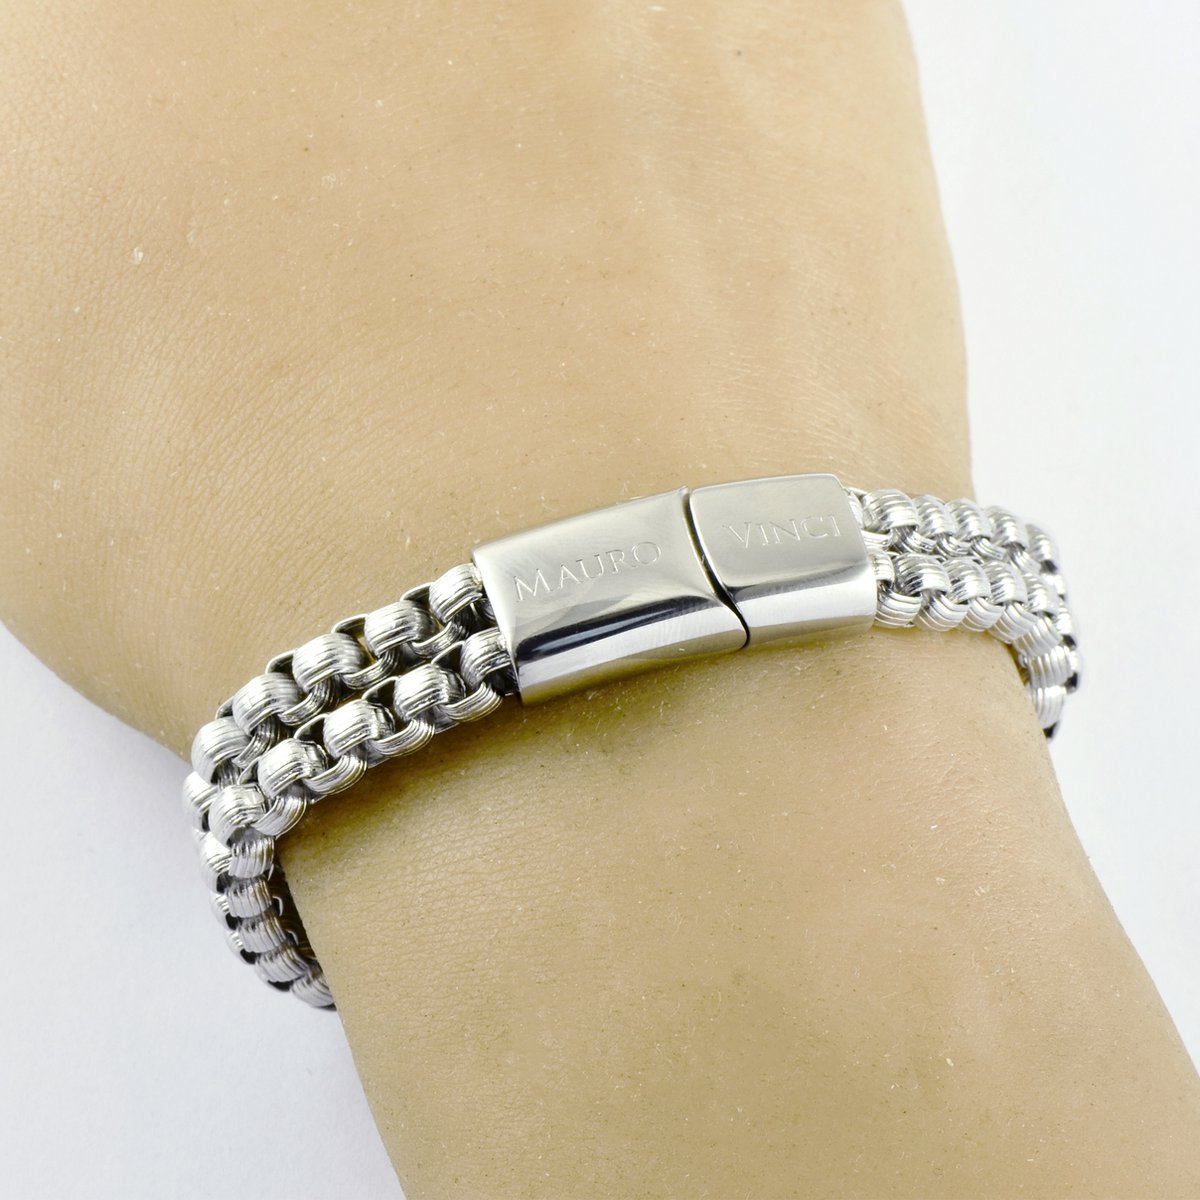 Stalen armband glanzend Mauro Vinci Cili 21cm - Armband staal met magnetische sluiting en geschenkverpakking